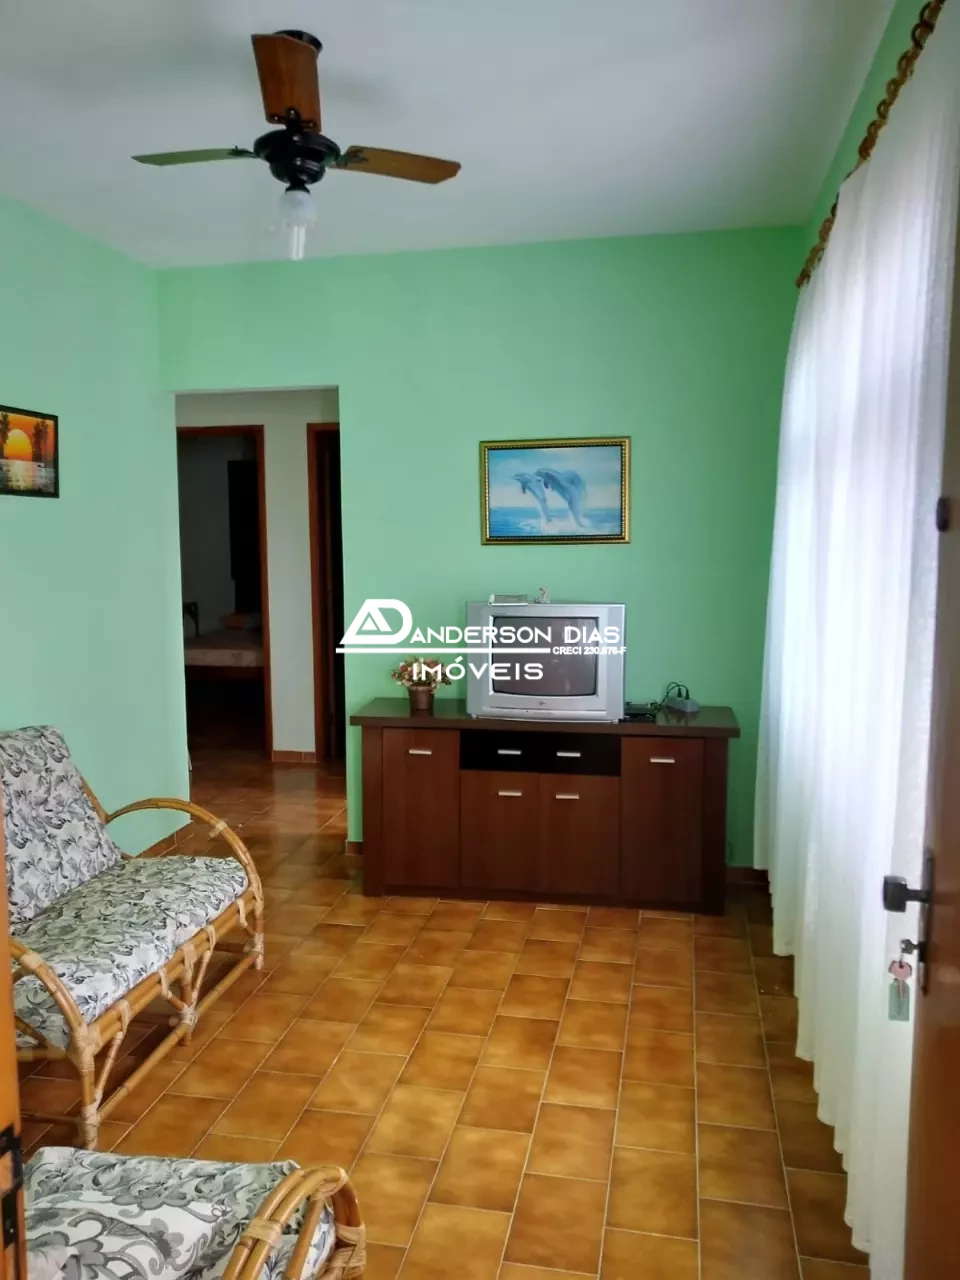 Apartamento com 2 dormitórios à venda, 62 m² por R$ 350.000 - Martim de Sá - Caraguatatuba/SP